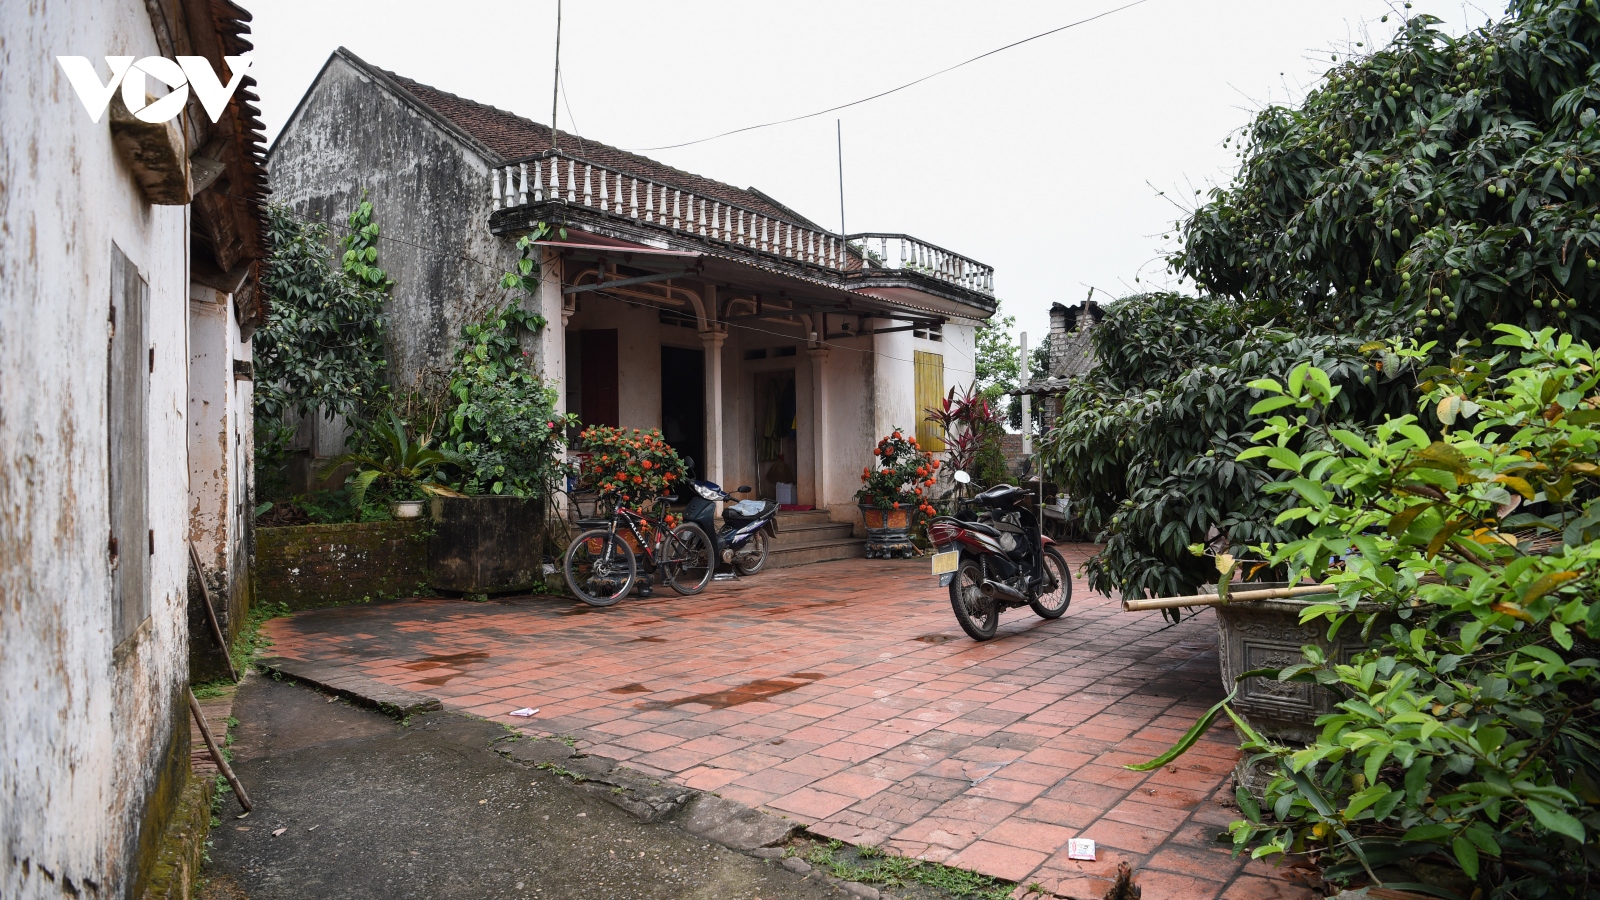 Nơi ăn chốn ở của "cô gái vàng" Nguyễn Thị Oanh ở quê nhà Bắc Giang